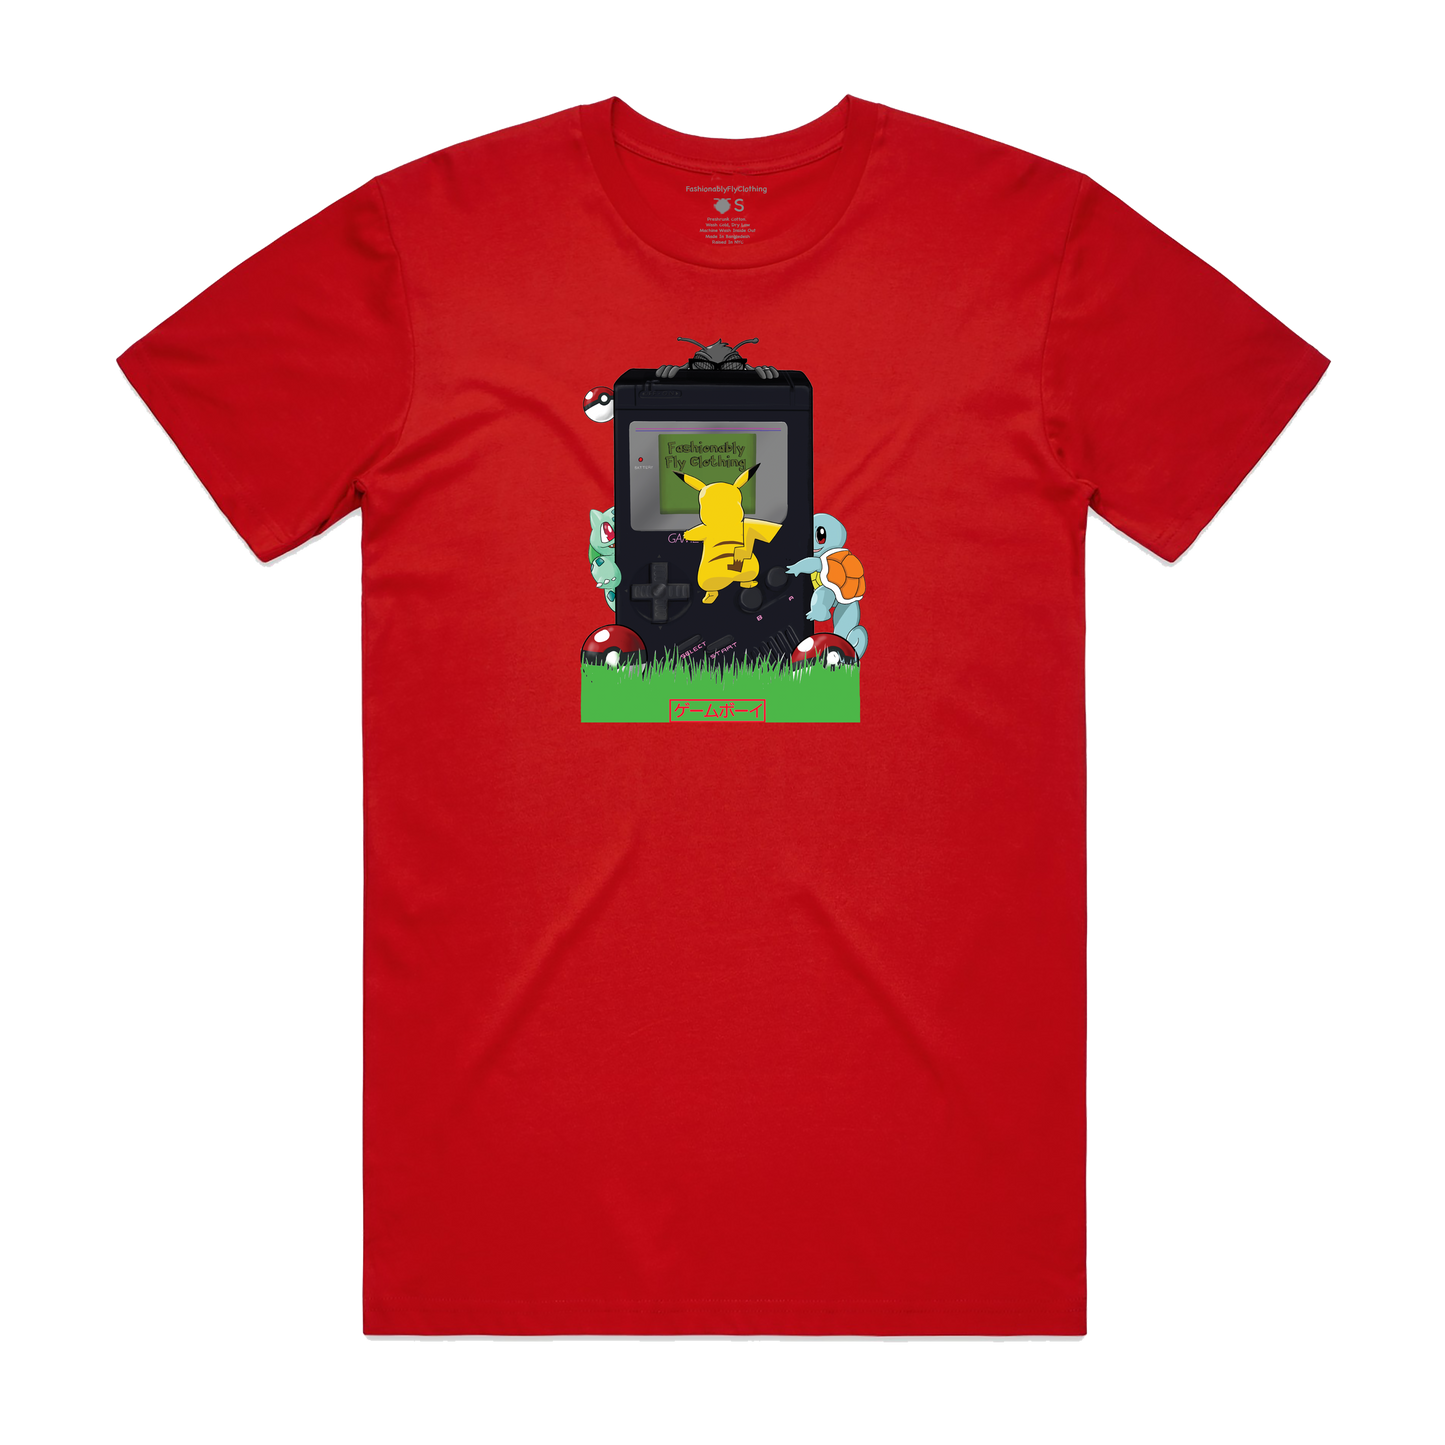 Retro Unisex T-Shirt - Red